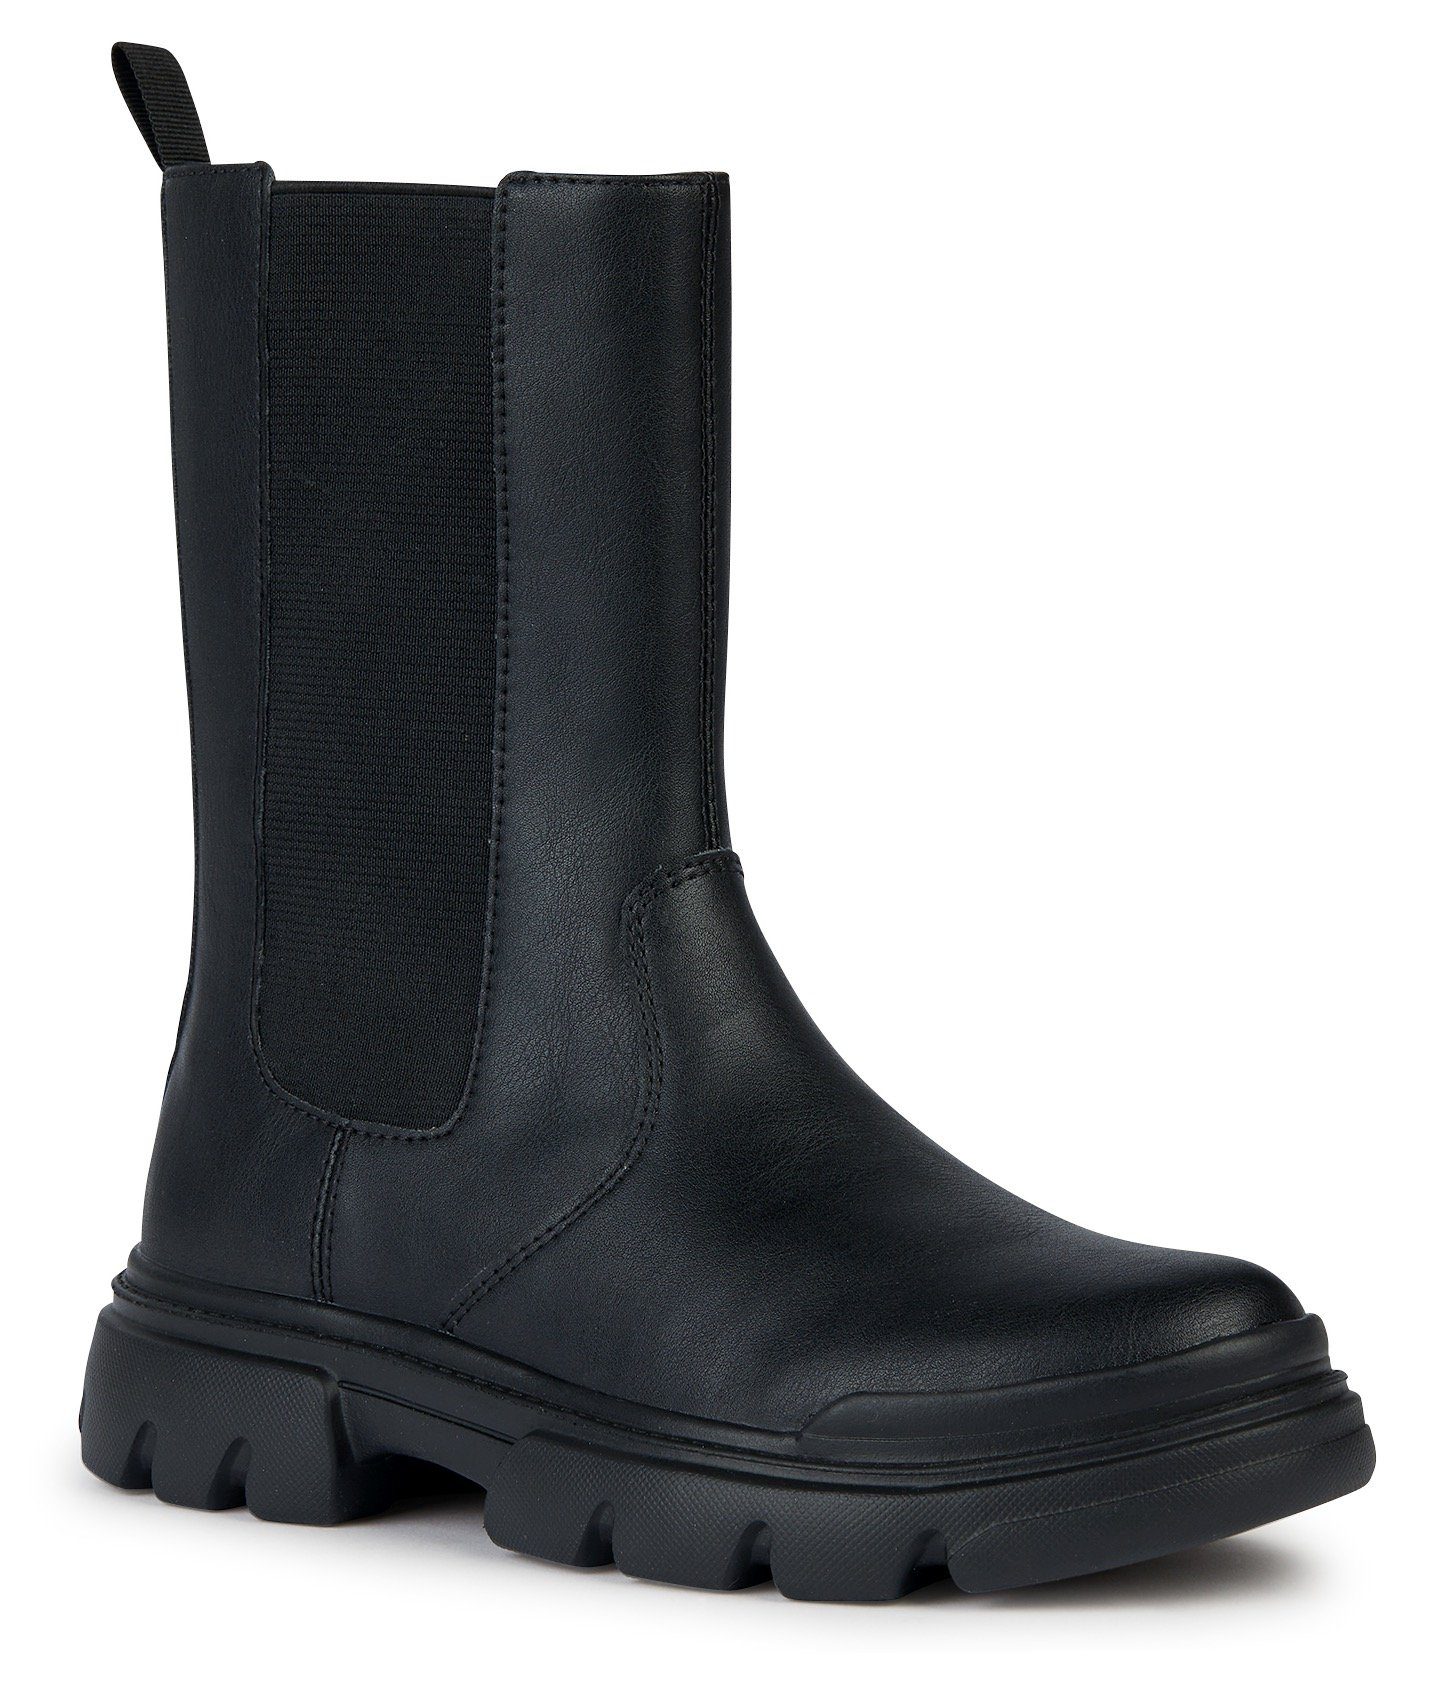 NU 20% KORTING: Geox Chelsea-boots J JUNETTE GIRL met een praktisch, verwisselbaar voetbed